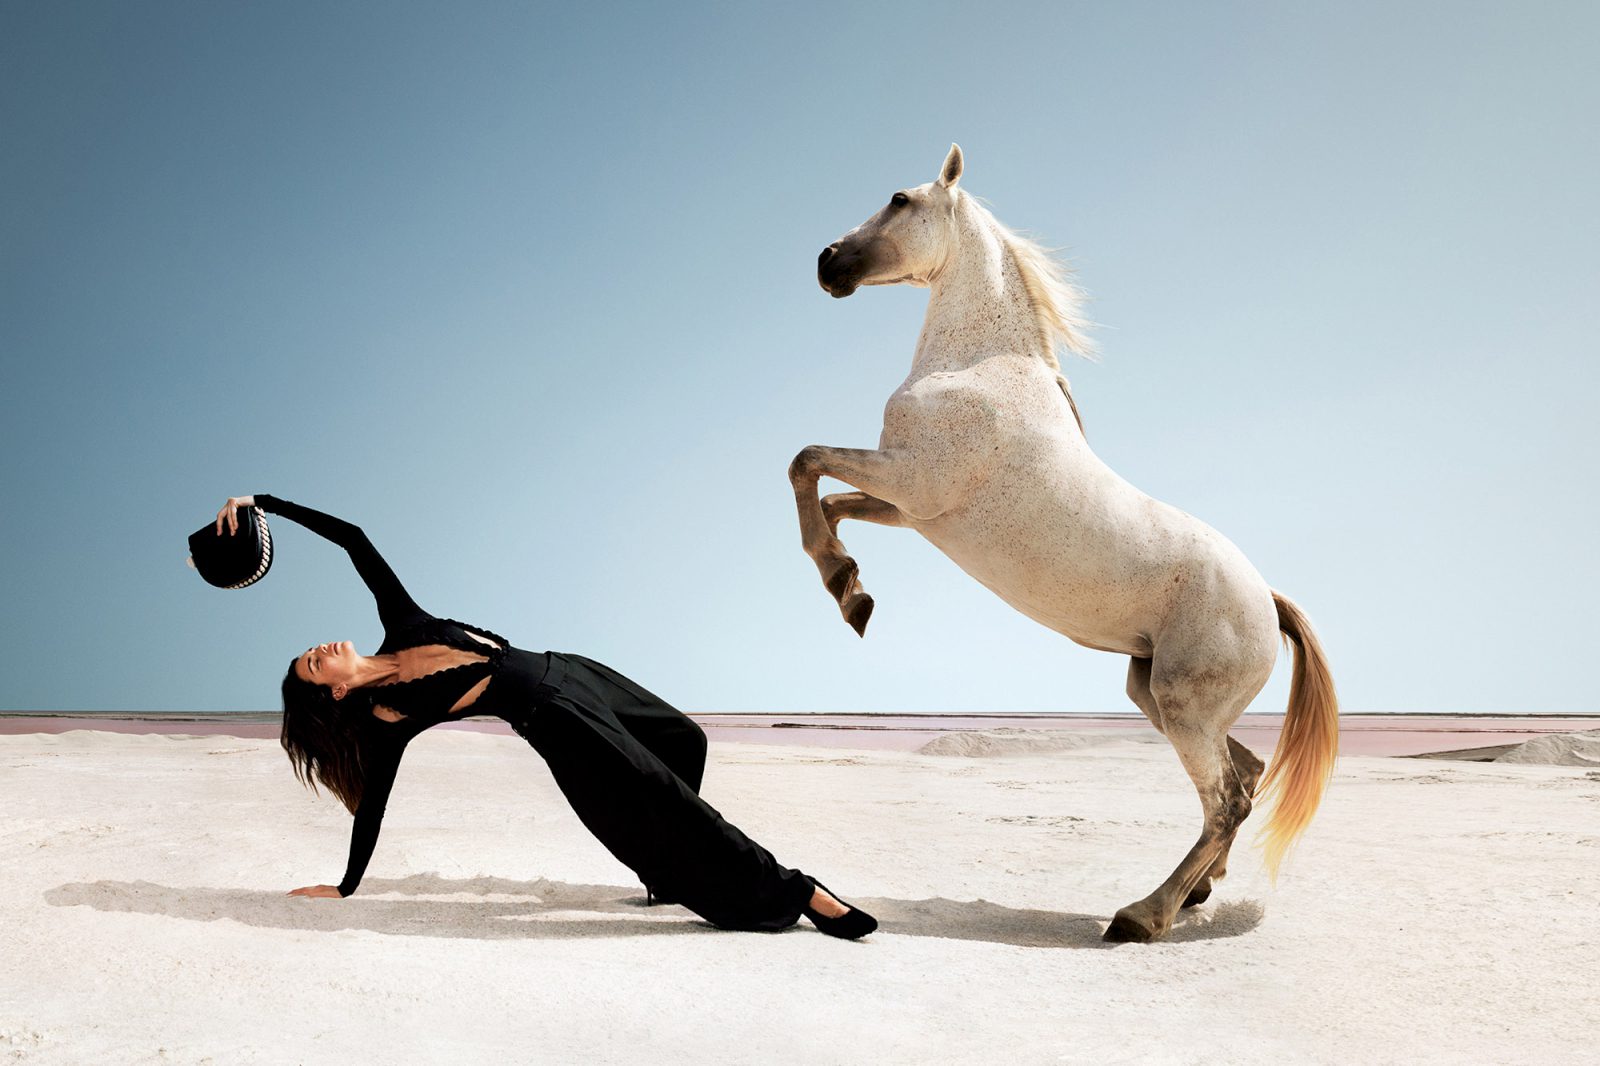 Обнаженная Кендалл Дженнер верхом на коне появилась в новой рекламе. Топ фото Кендалл Дженнер, предпочитающей скакать на лошадях совершенно без одежды